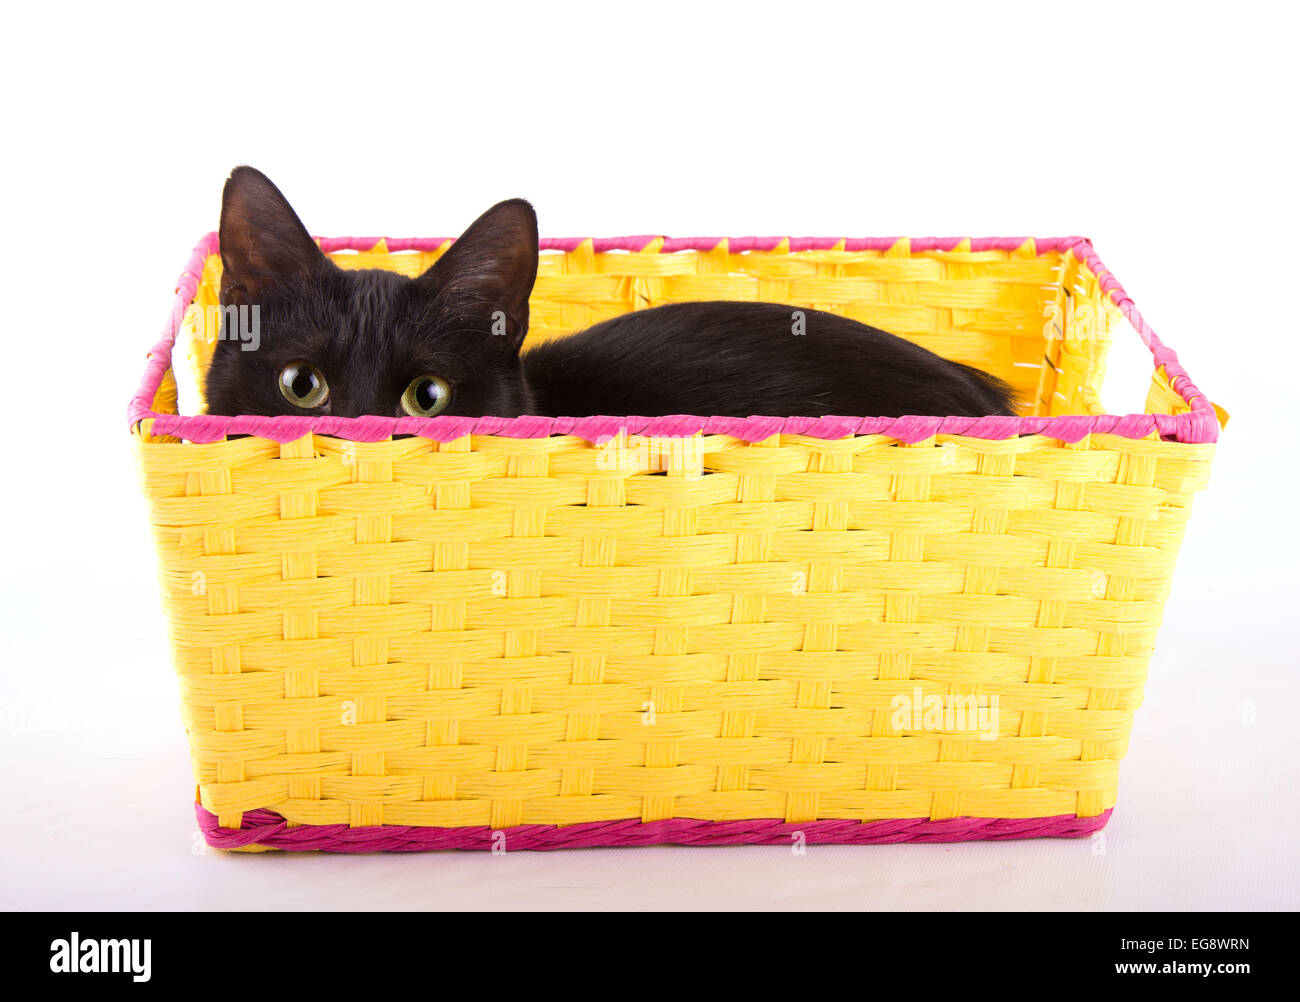 Entzückende schwarze Katze versteckt in einem gelben Korb über den Rand zu spähen Stockfoto